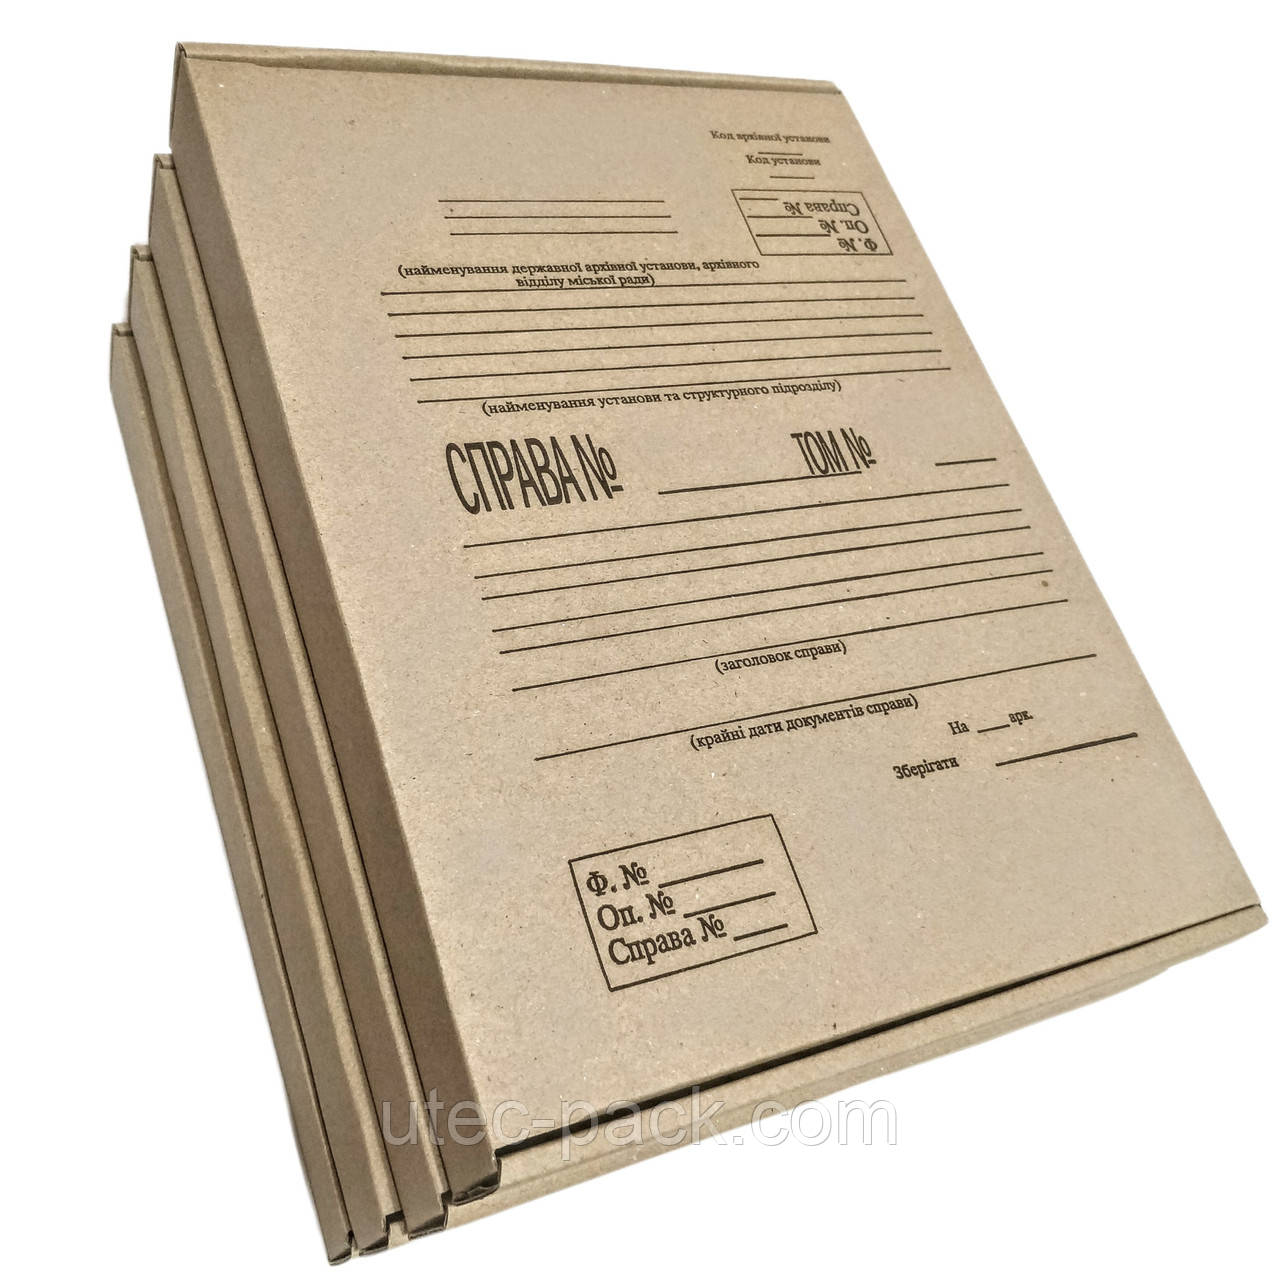 Папка архівна гофрокартон, формату А4 (323*228мм), з титульною сторінкою, висота корінця 40мм